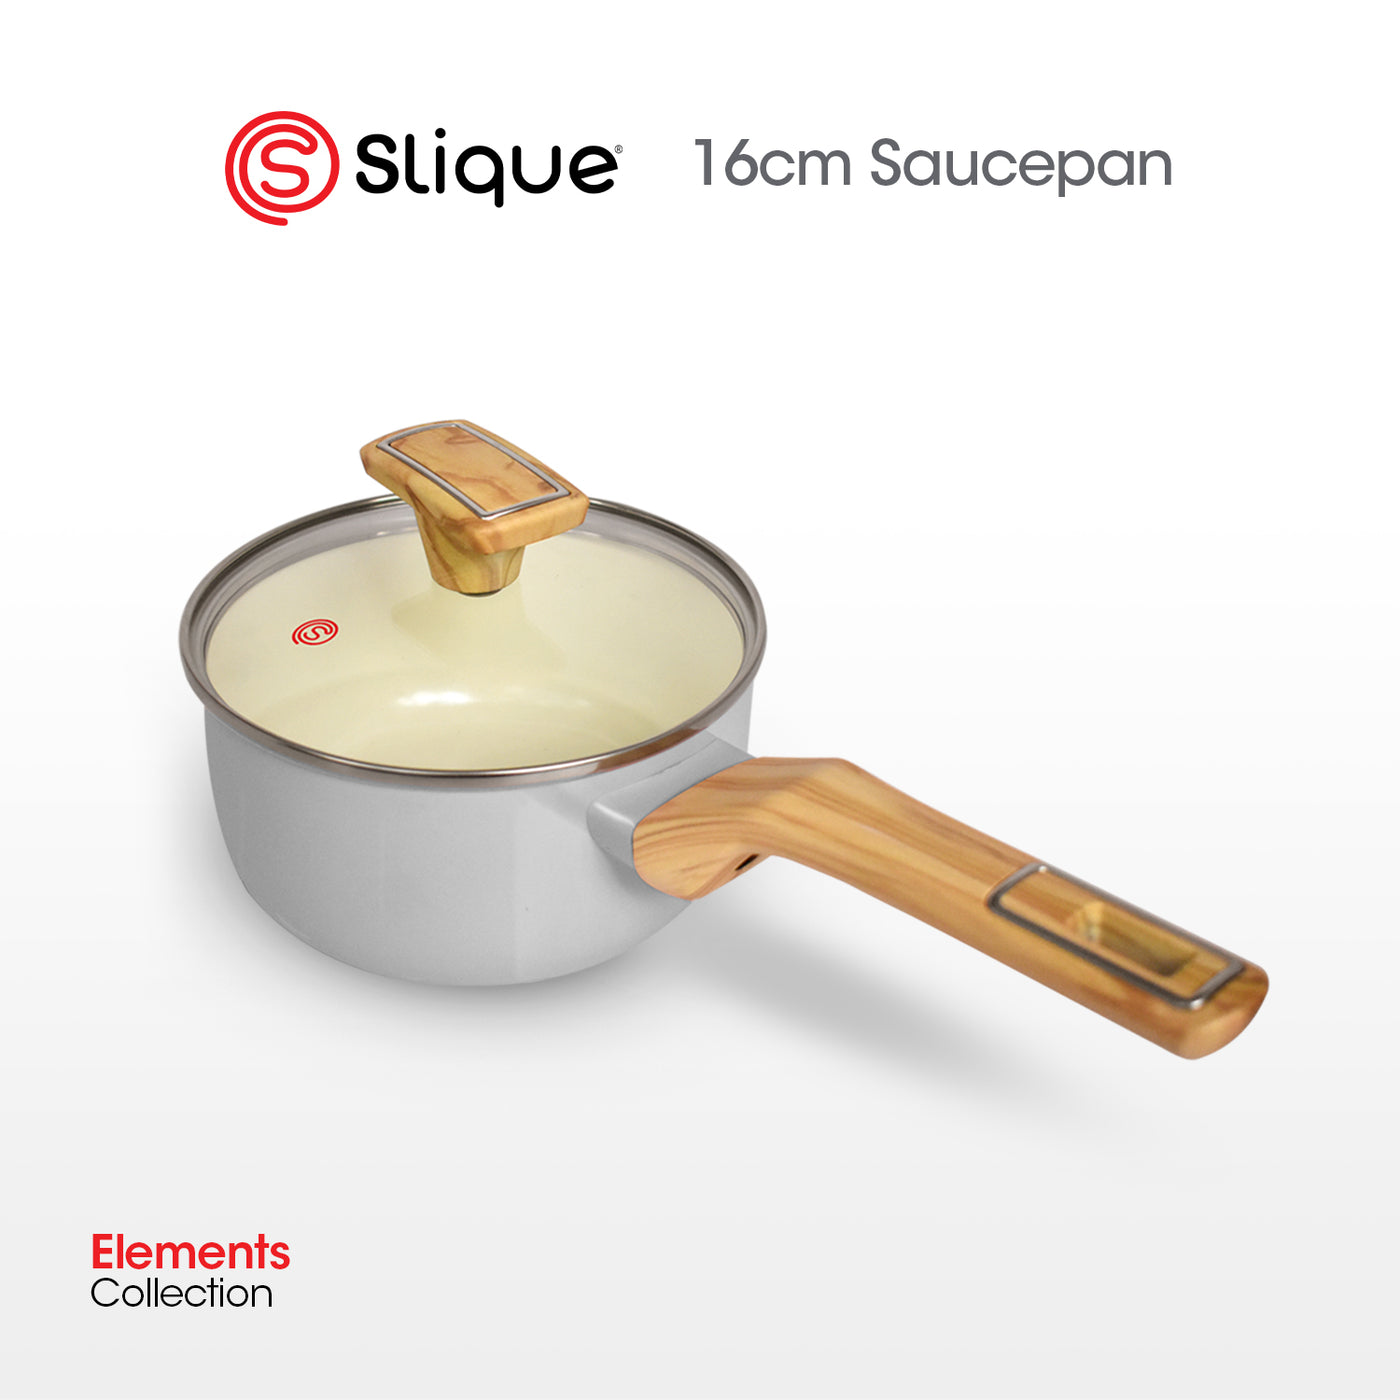 SLIQUE Premium Sauce Pan 16cm Elements Collection